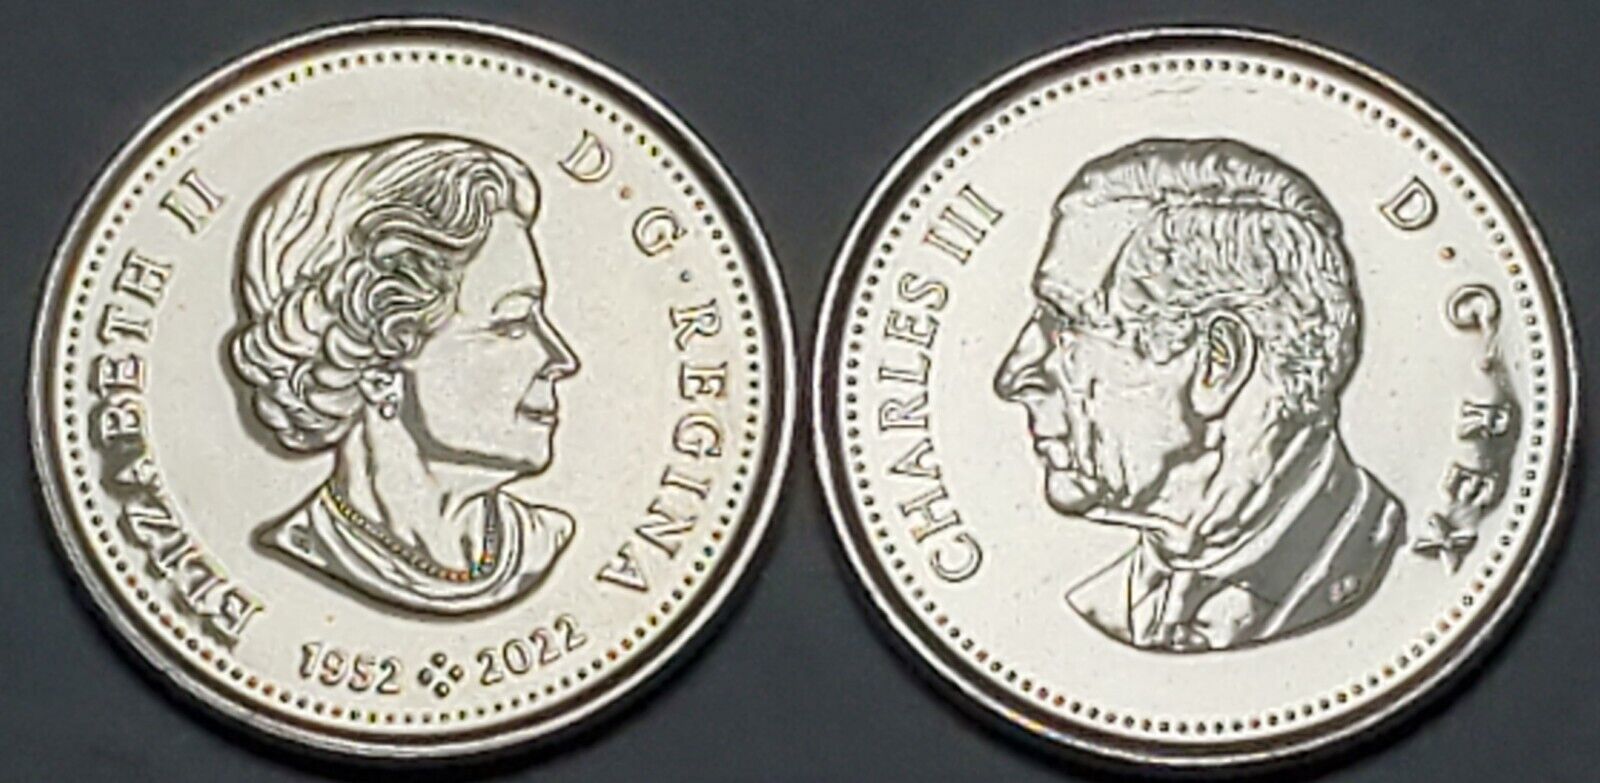 Both 2023 King Charles III /Elizabeth II CANADA 50 Cent Half Dollar FIRST STRIKE